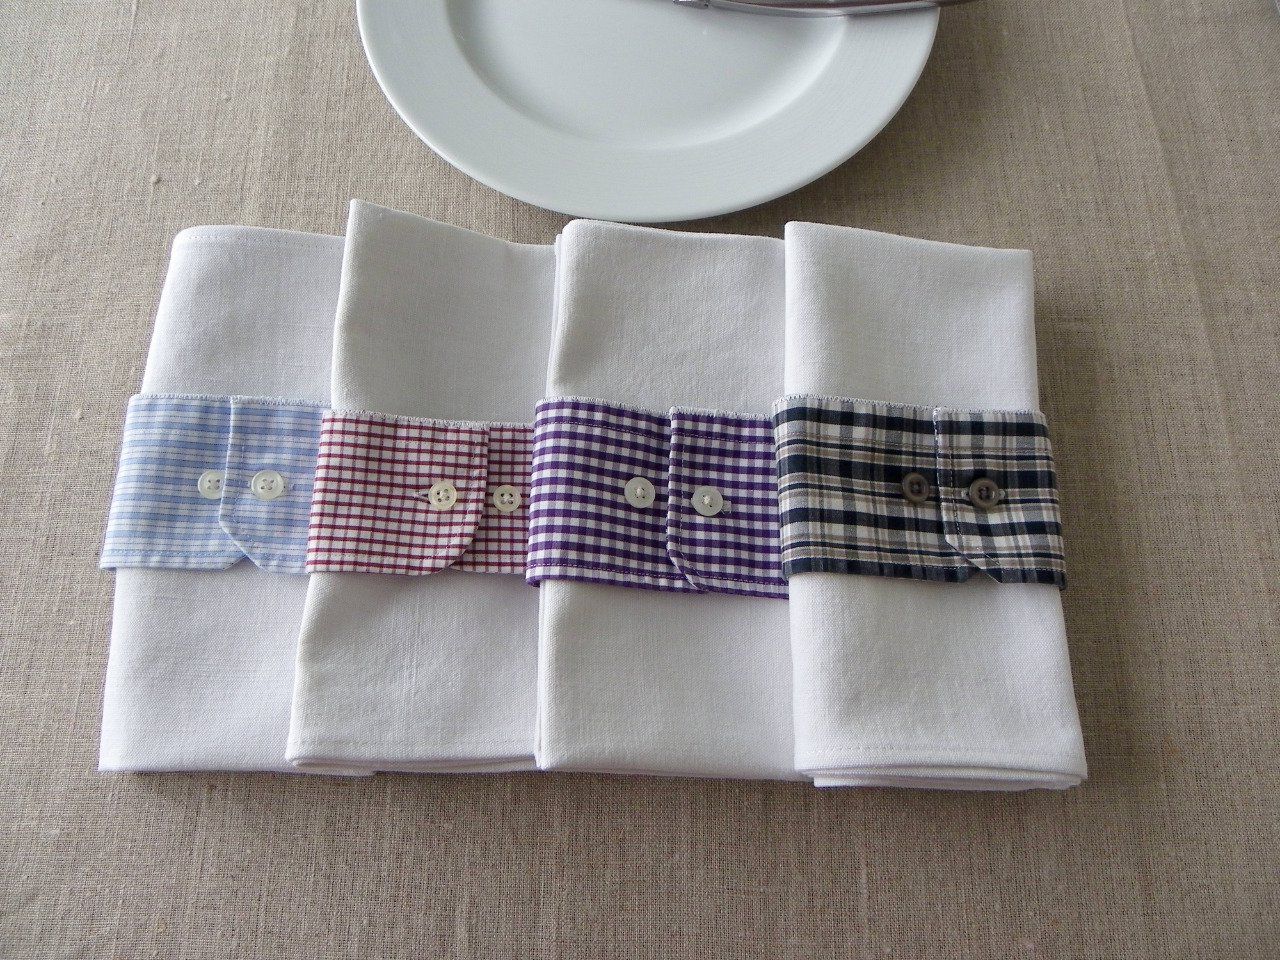 4 serviettes de table blanches en coton ancien + 4 ronds de serviettes tissu upcycling recyclé